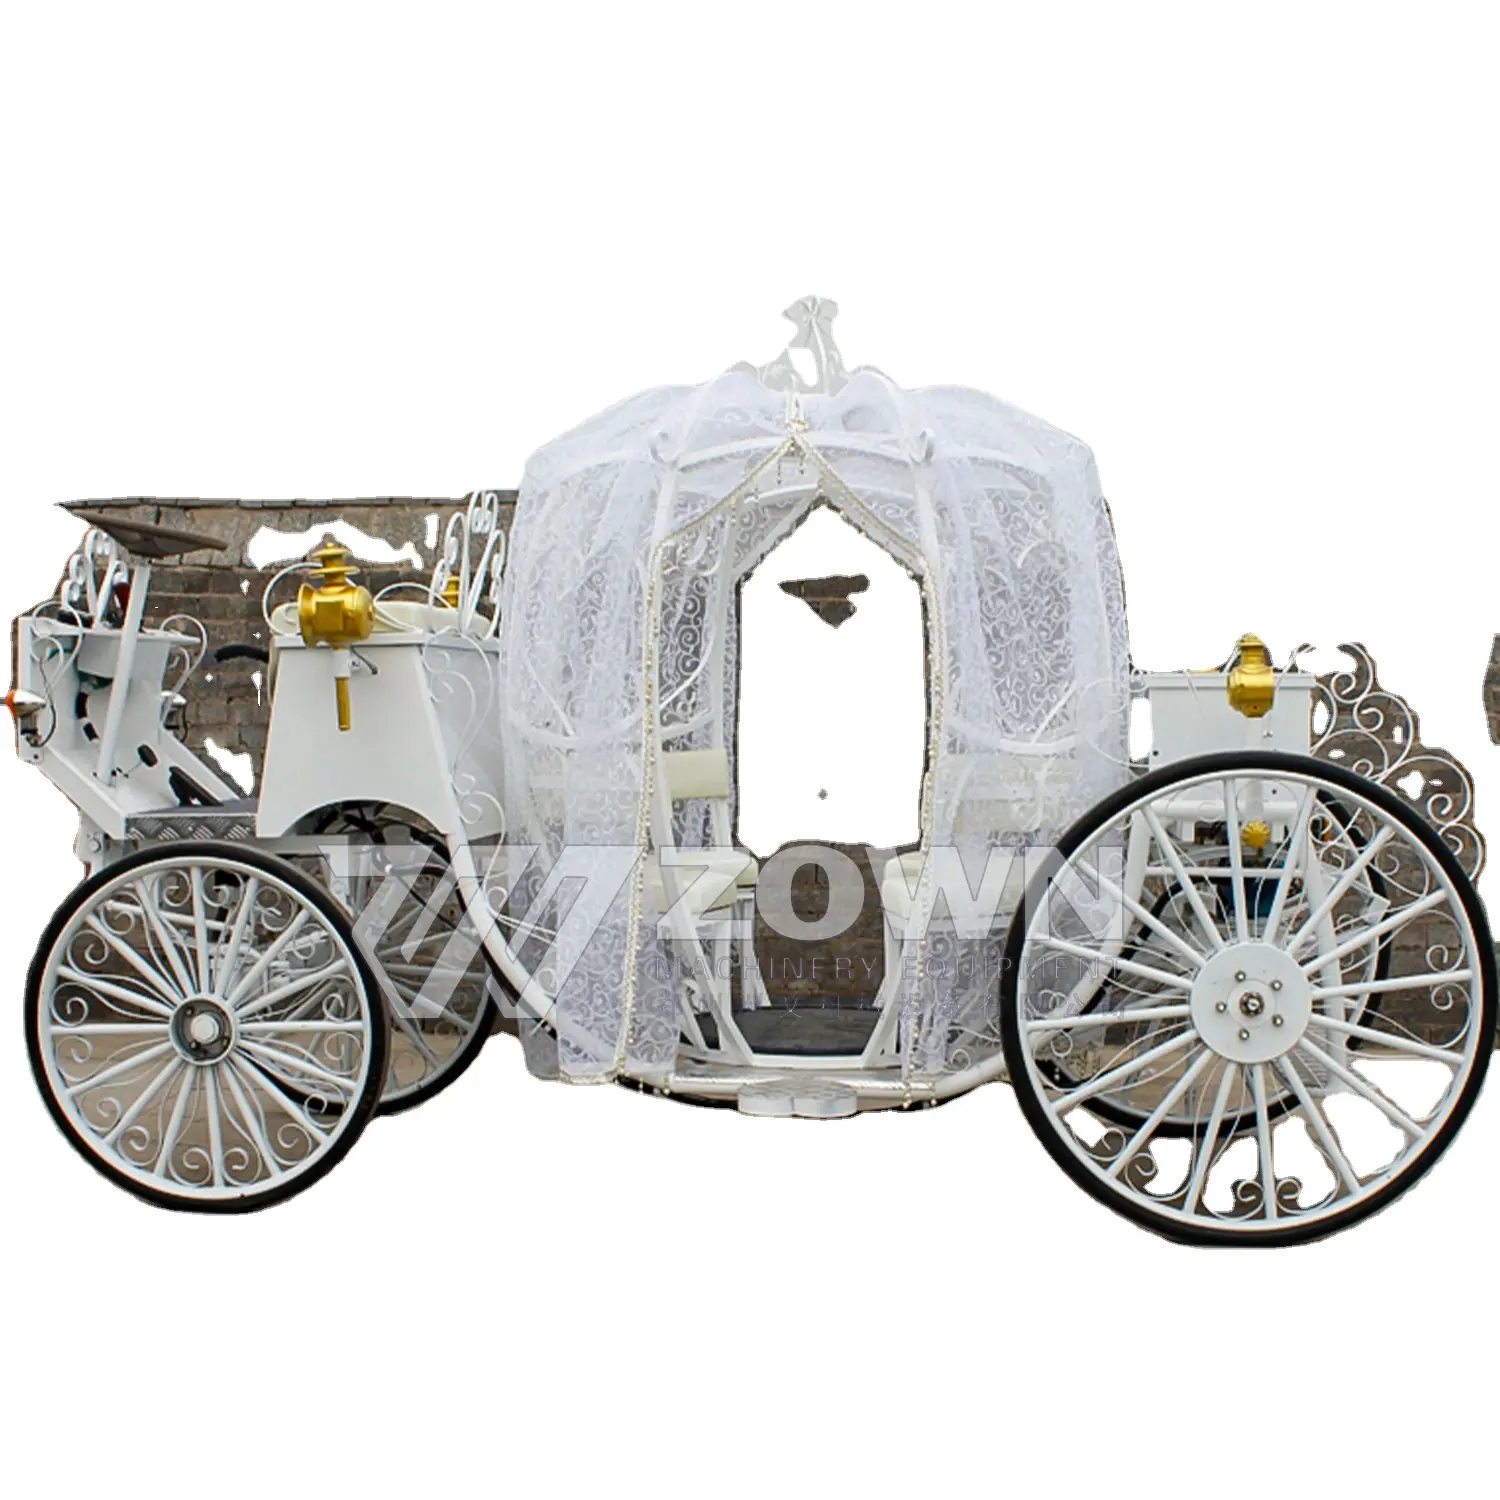 عربة ساقطة سيندريلا كهربائية بيضاء قابلة للتخصيص للطرق الوعرة مع سقف، البيع المباشر من المصنع والجملة